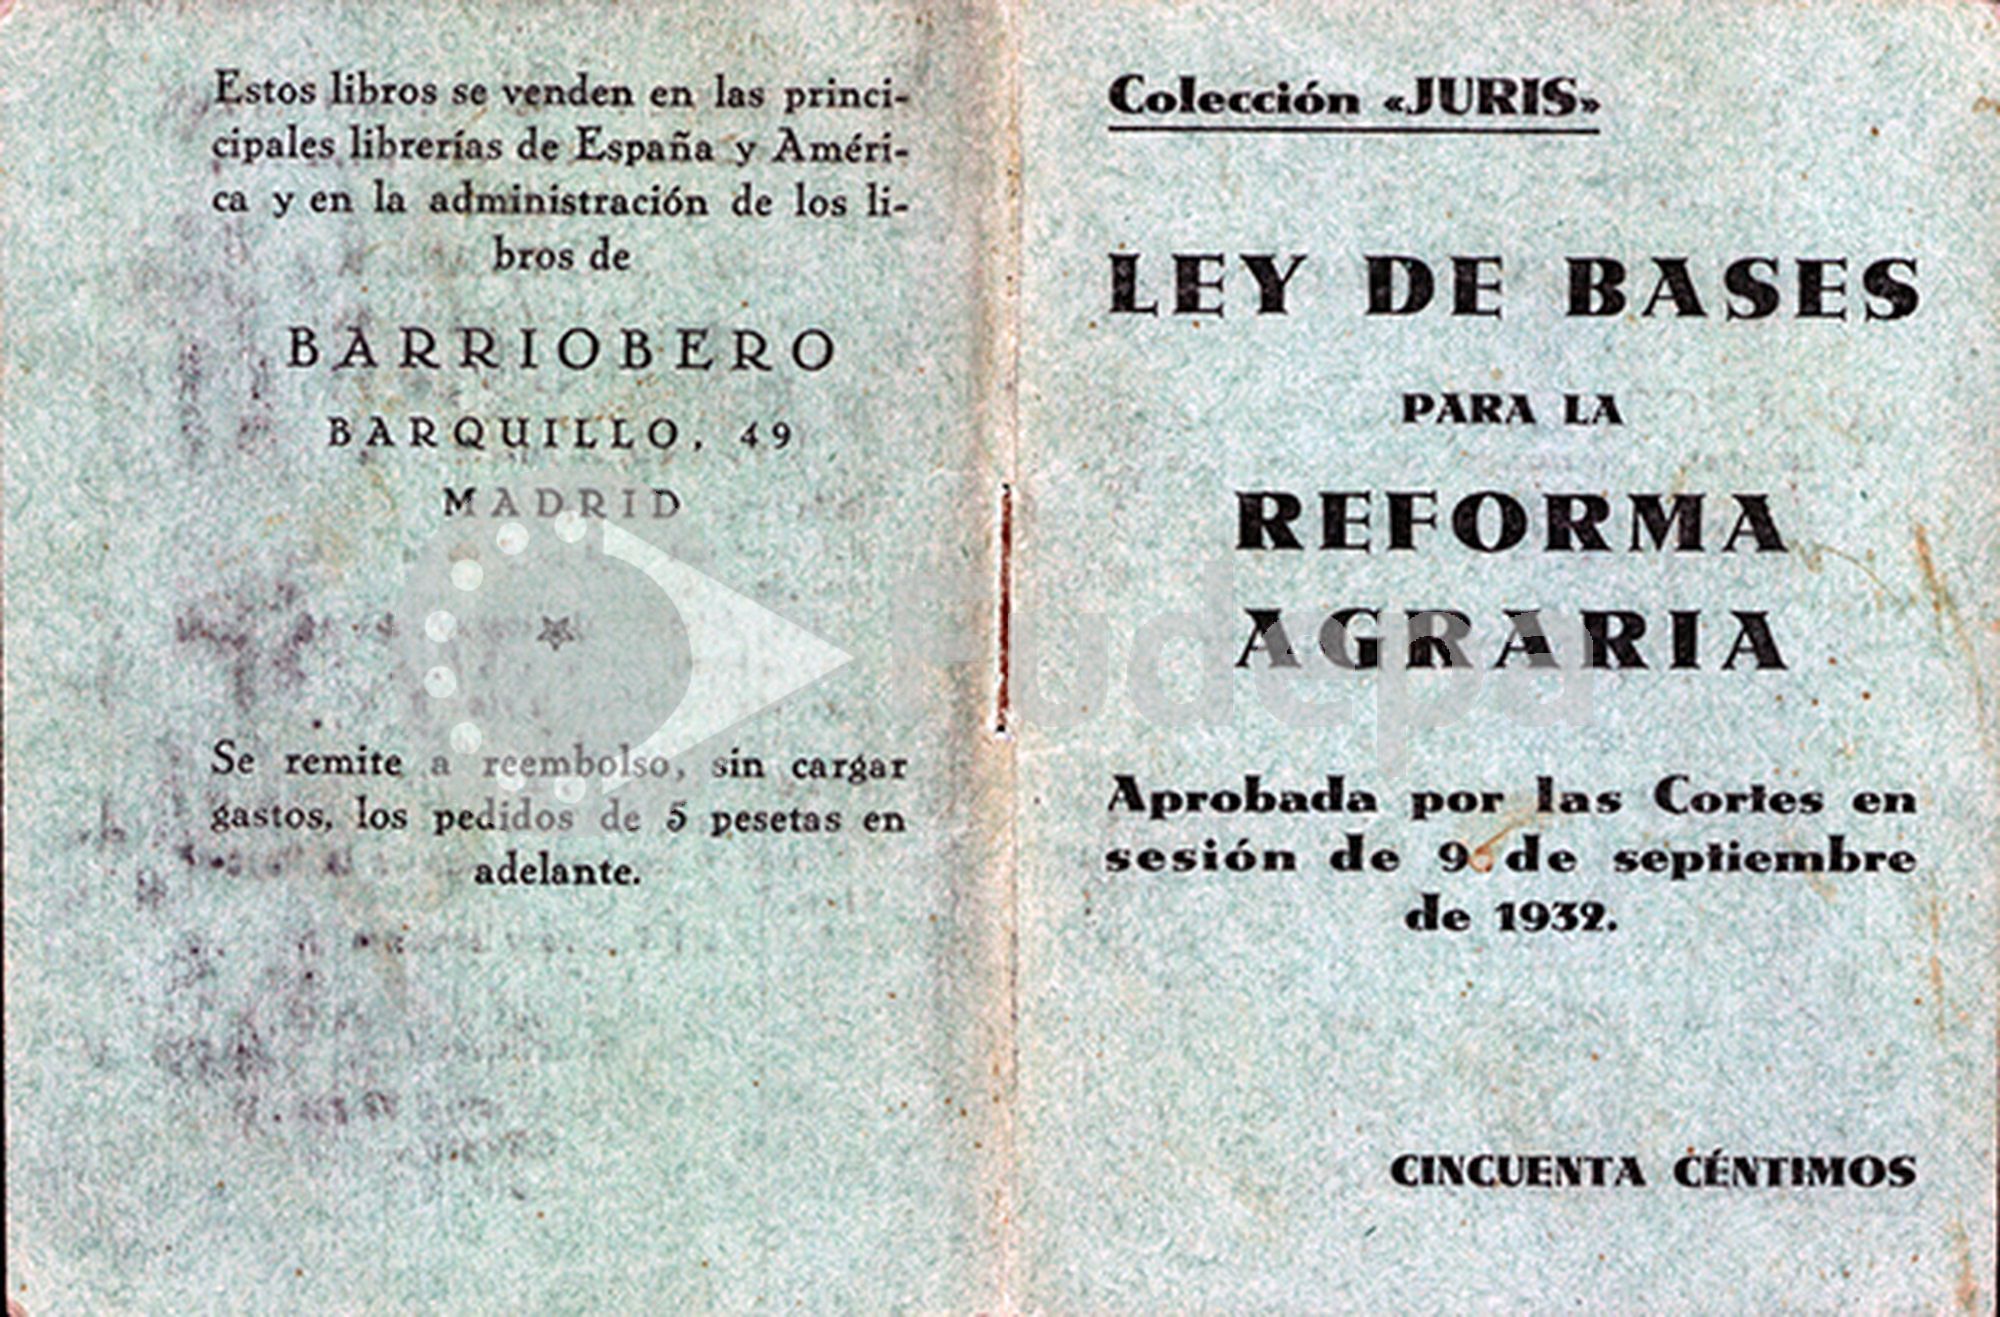 Ley de Bases para la Reforma Agraria. Aprobada por las Cortes en sesión de 9 de septiembre de 1932.  FUDEPA. AHUGT-A: C_12877.19